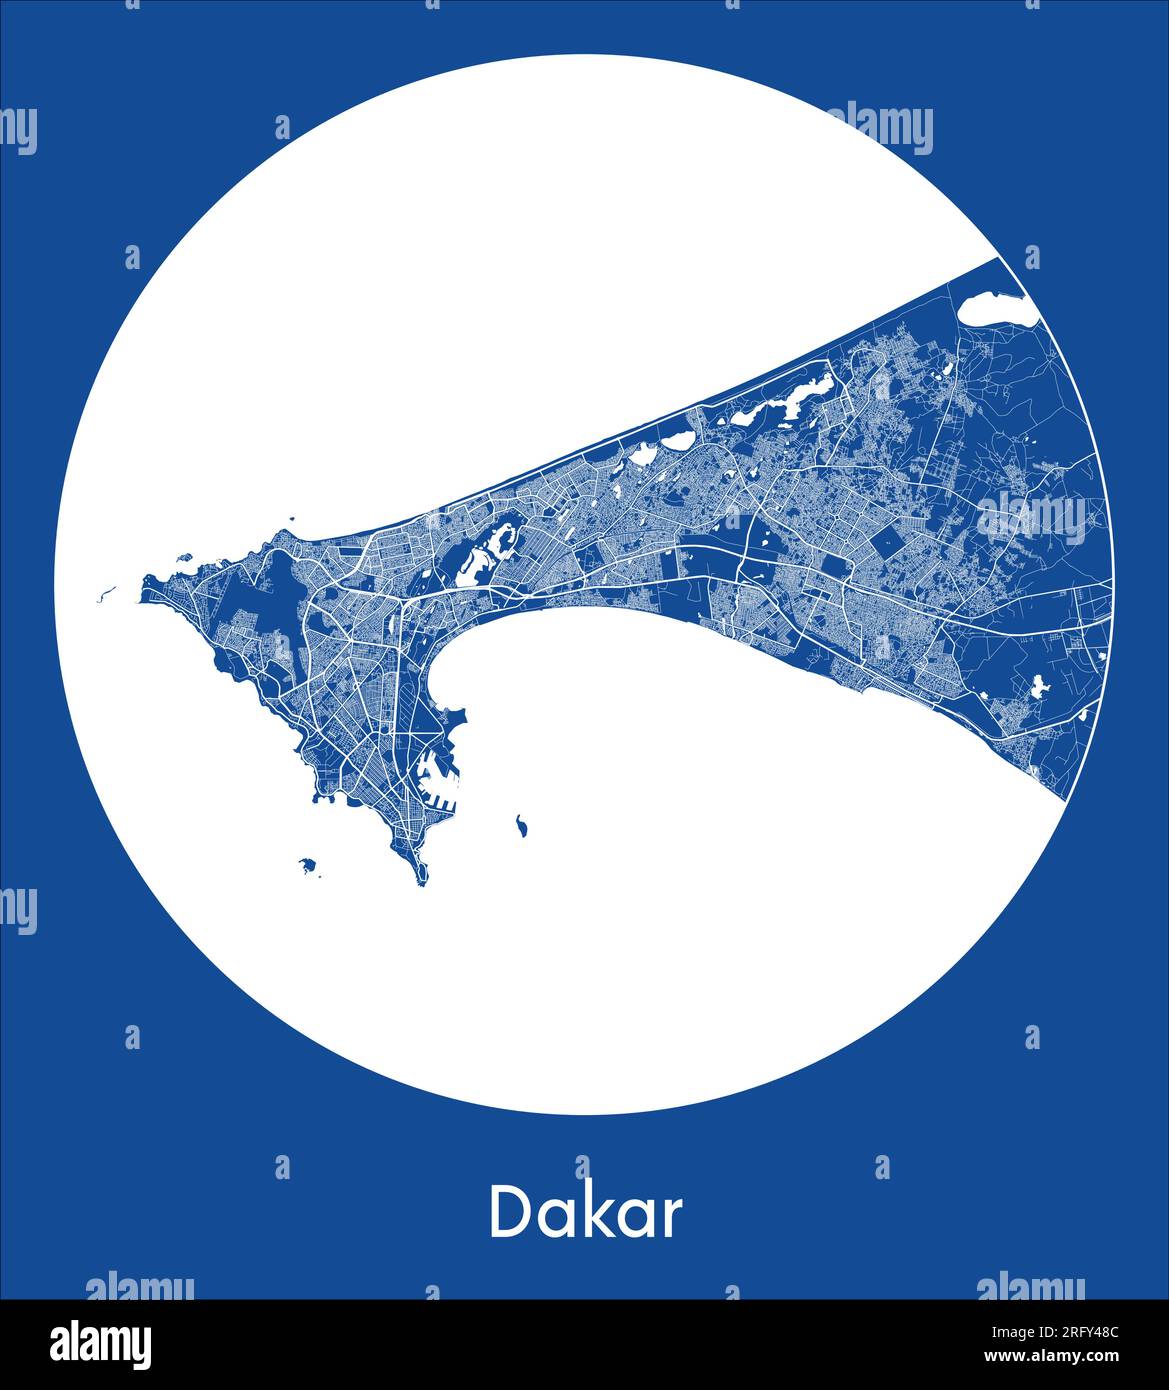 Plan de la ville Dakar Sénégal Afrique bleu imprimer rond cercle illustration vectorielle Illustration de Vecteur